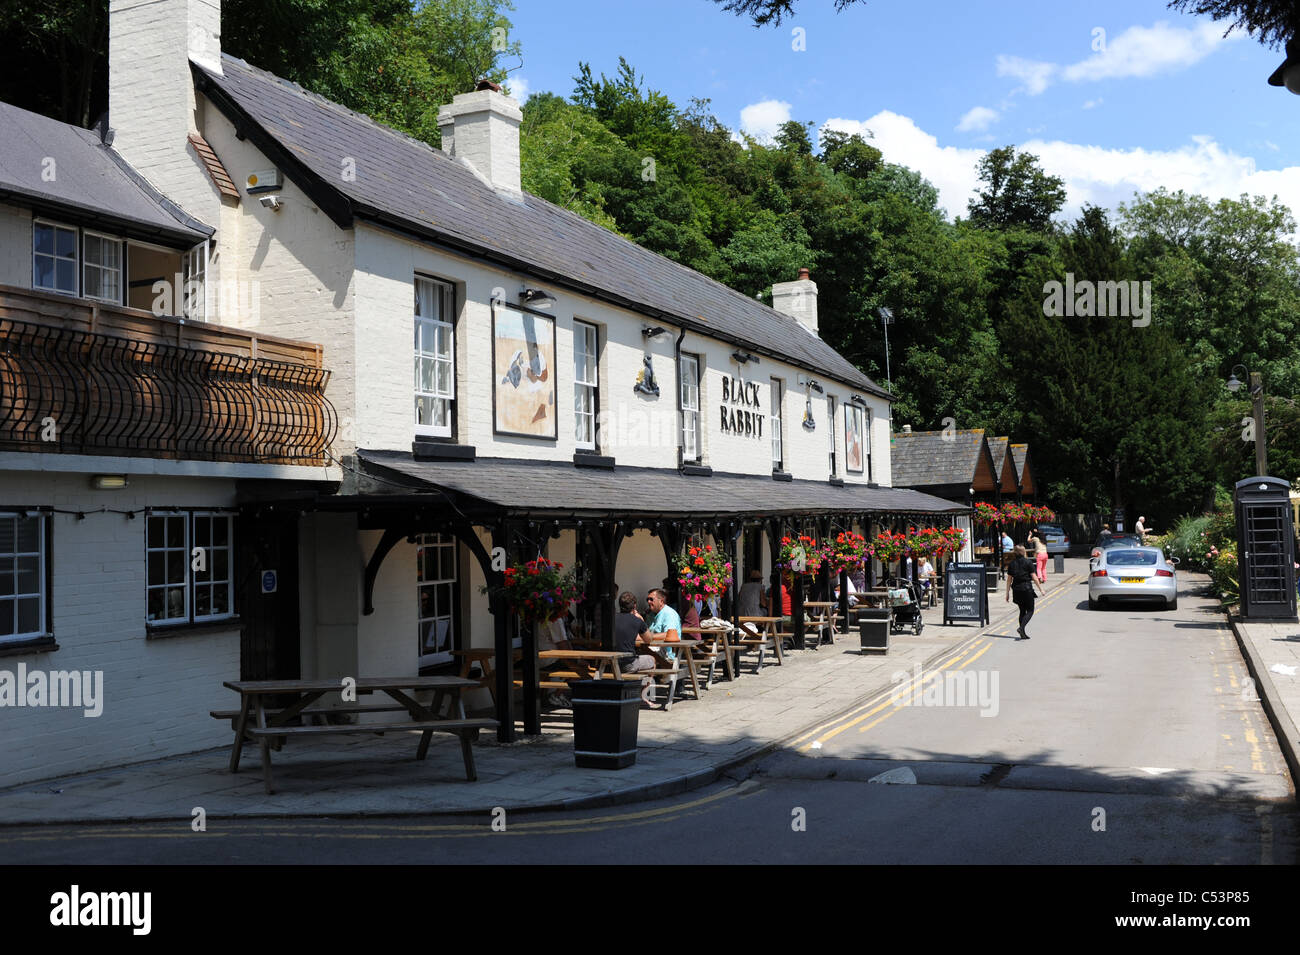 Le célèbre pub Lapin Noir sur la rivière Arun at Arundel UK Banque D'Images